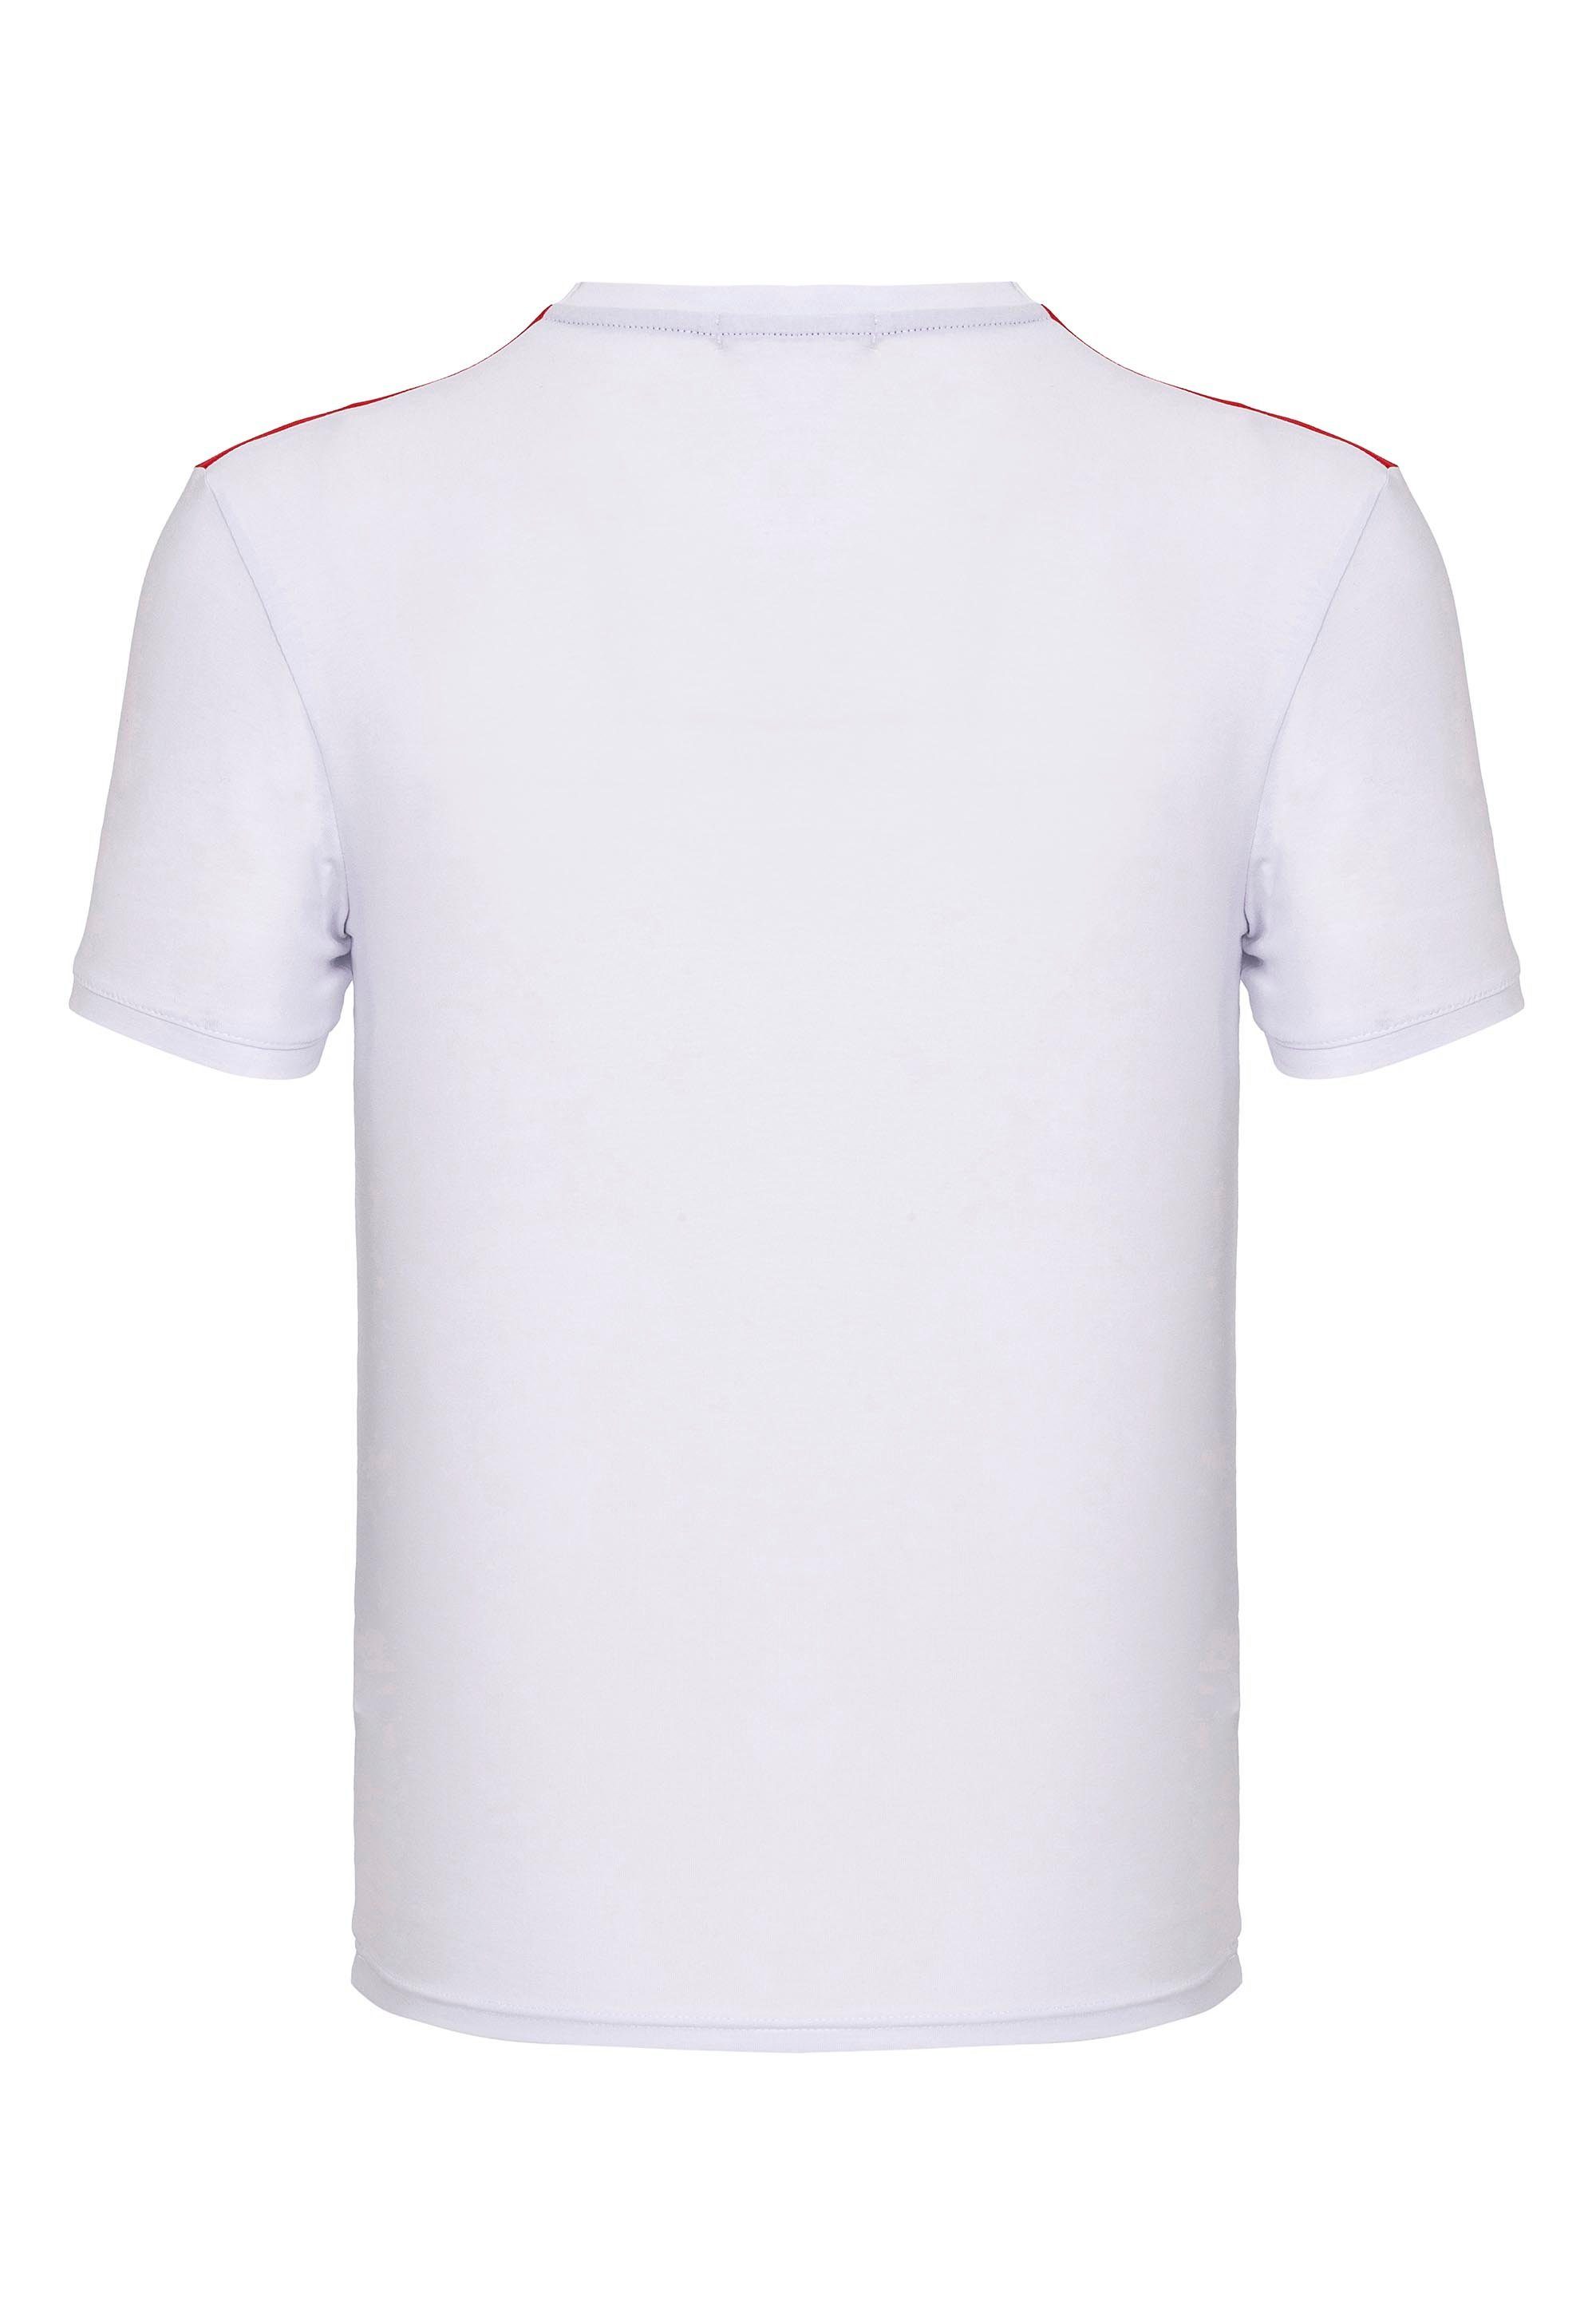 Milwaukee T-Shirt Stay-True-Print RedBridge mit weiß-mehrfarbig lockerem